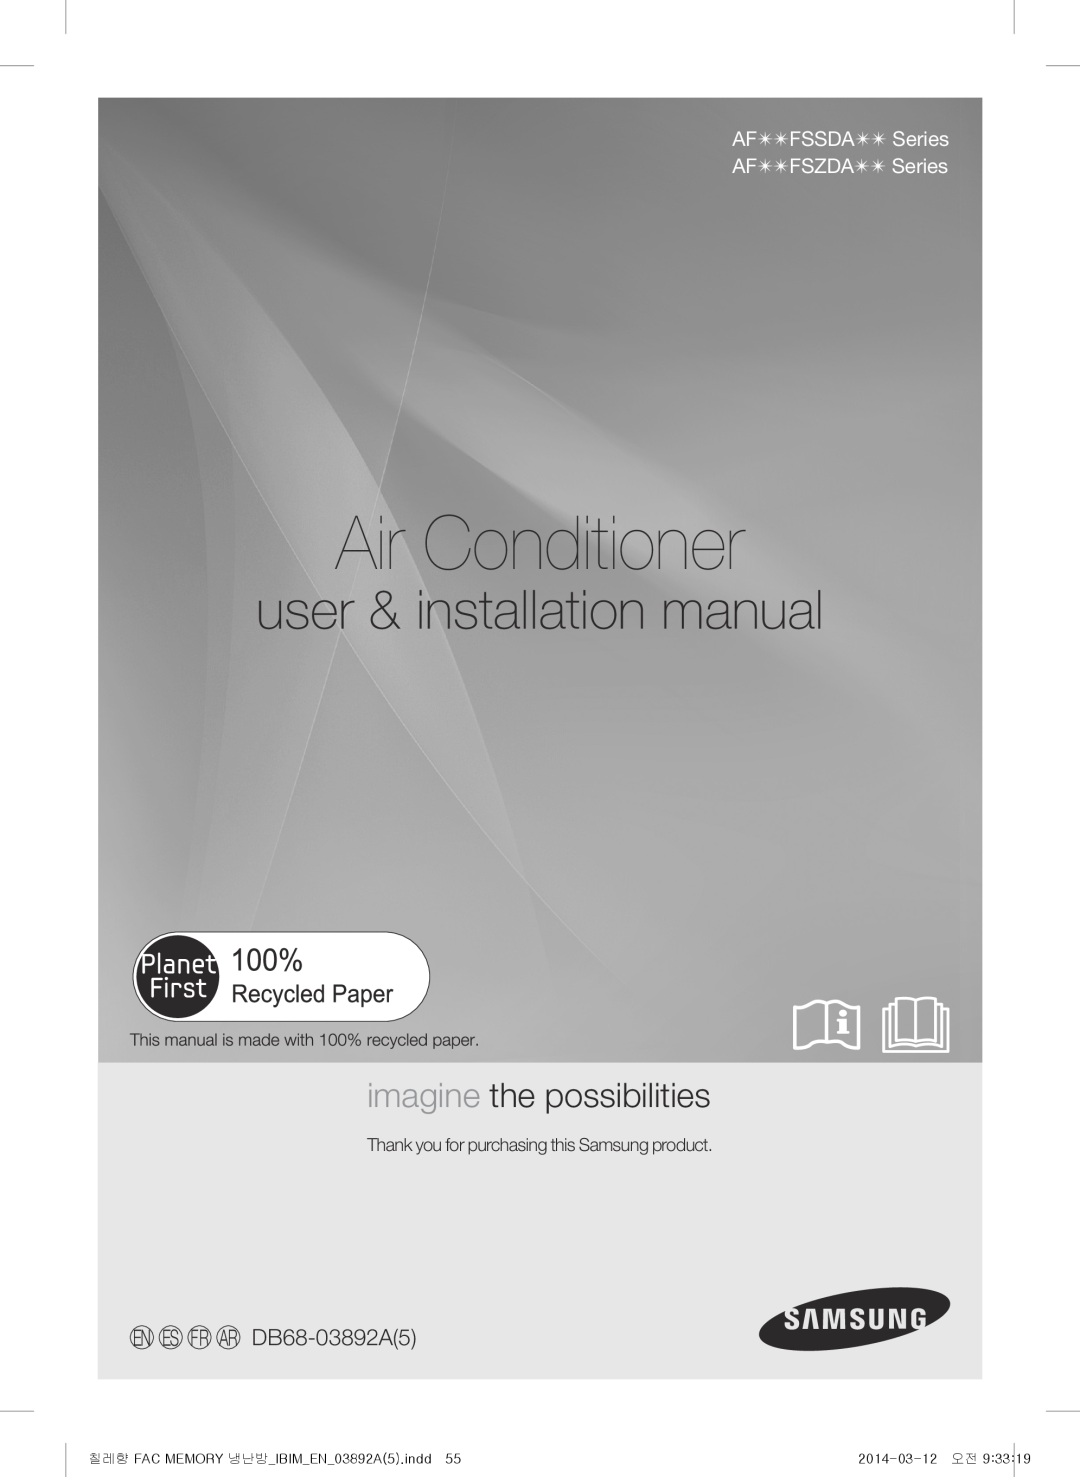 Samsung AF28FSSDADFXFA Air Conditioner, user & installation manual, imagine the possibilities, EN ES FR AR DB68-03892A5 